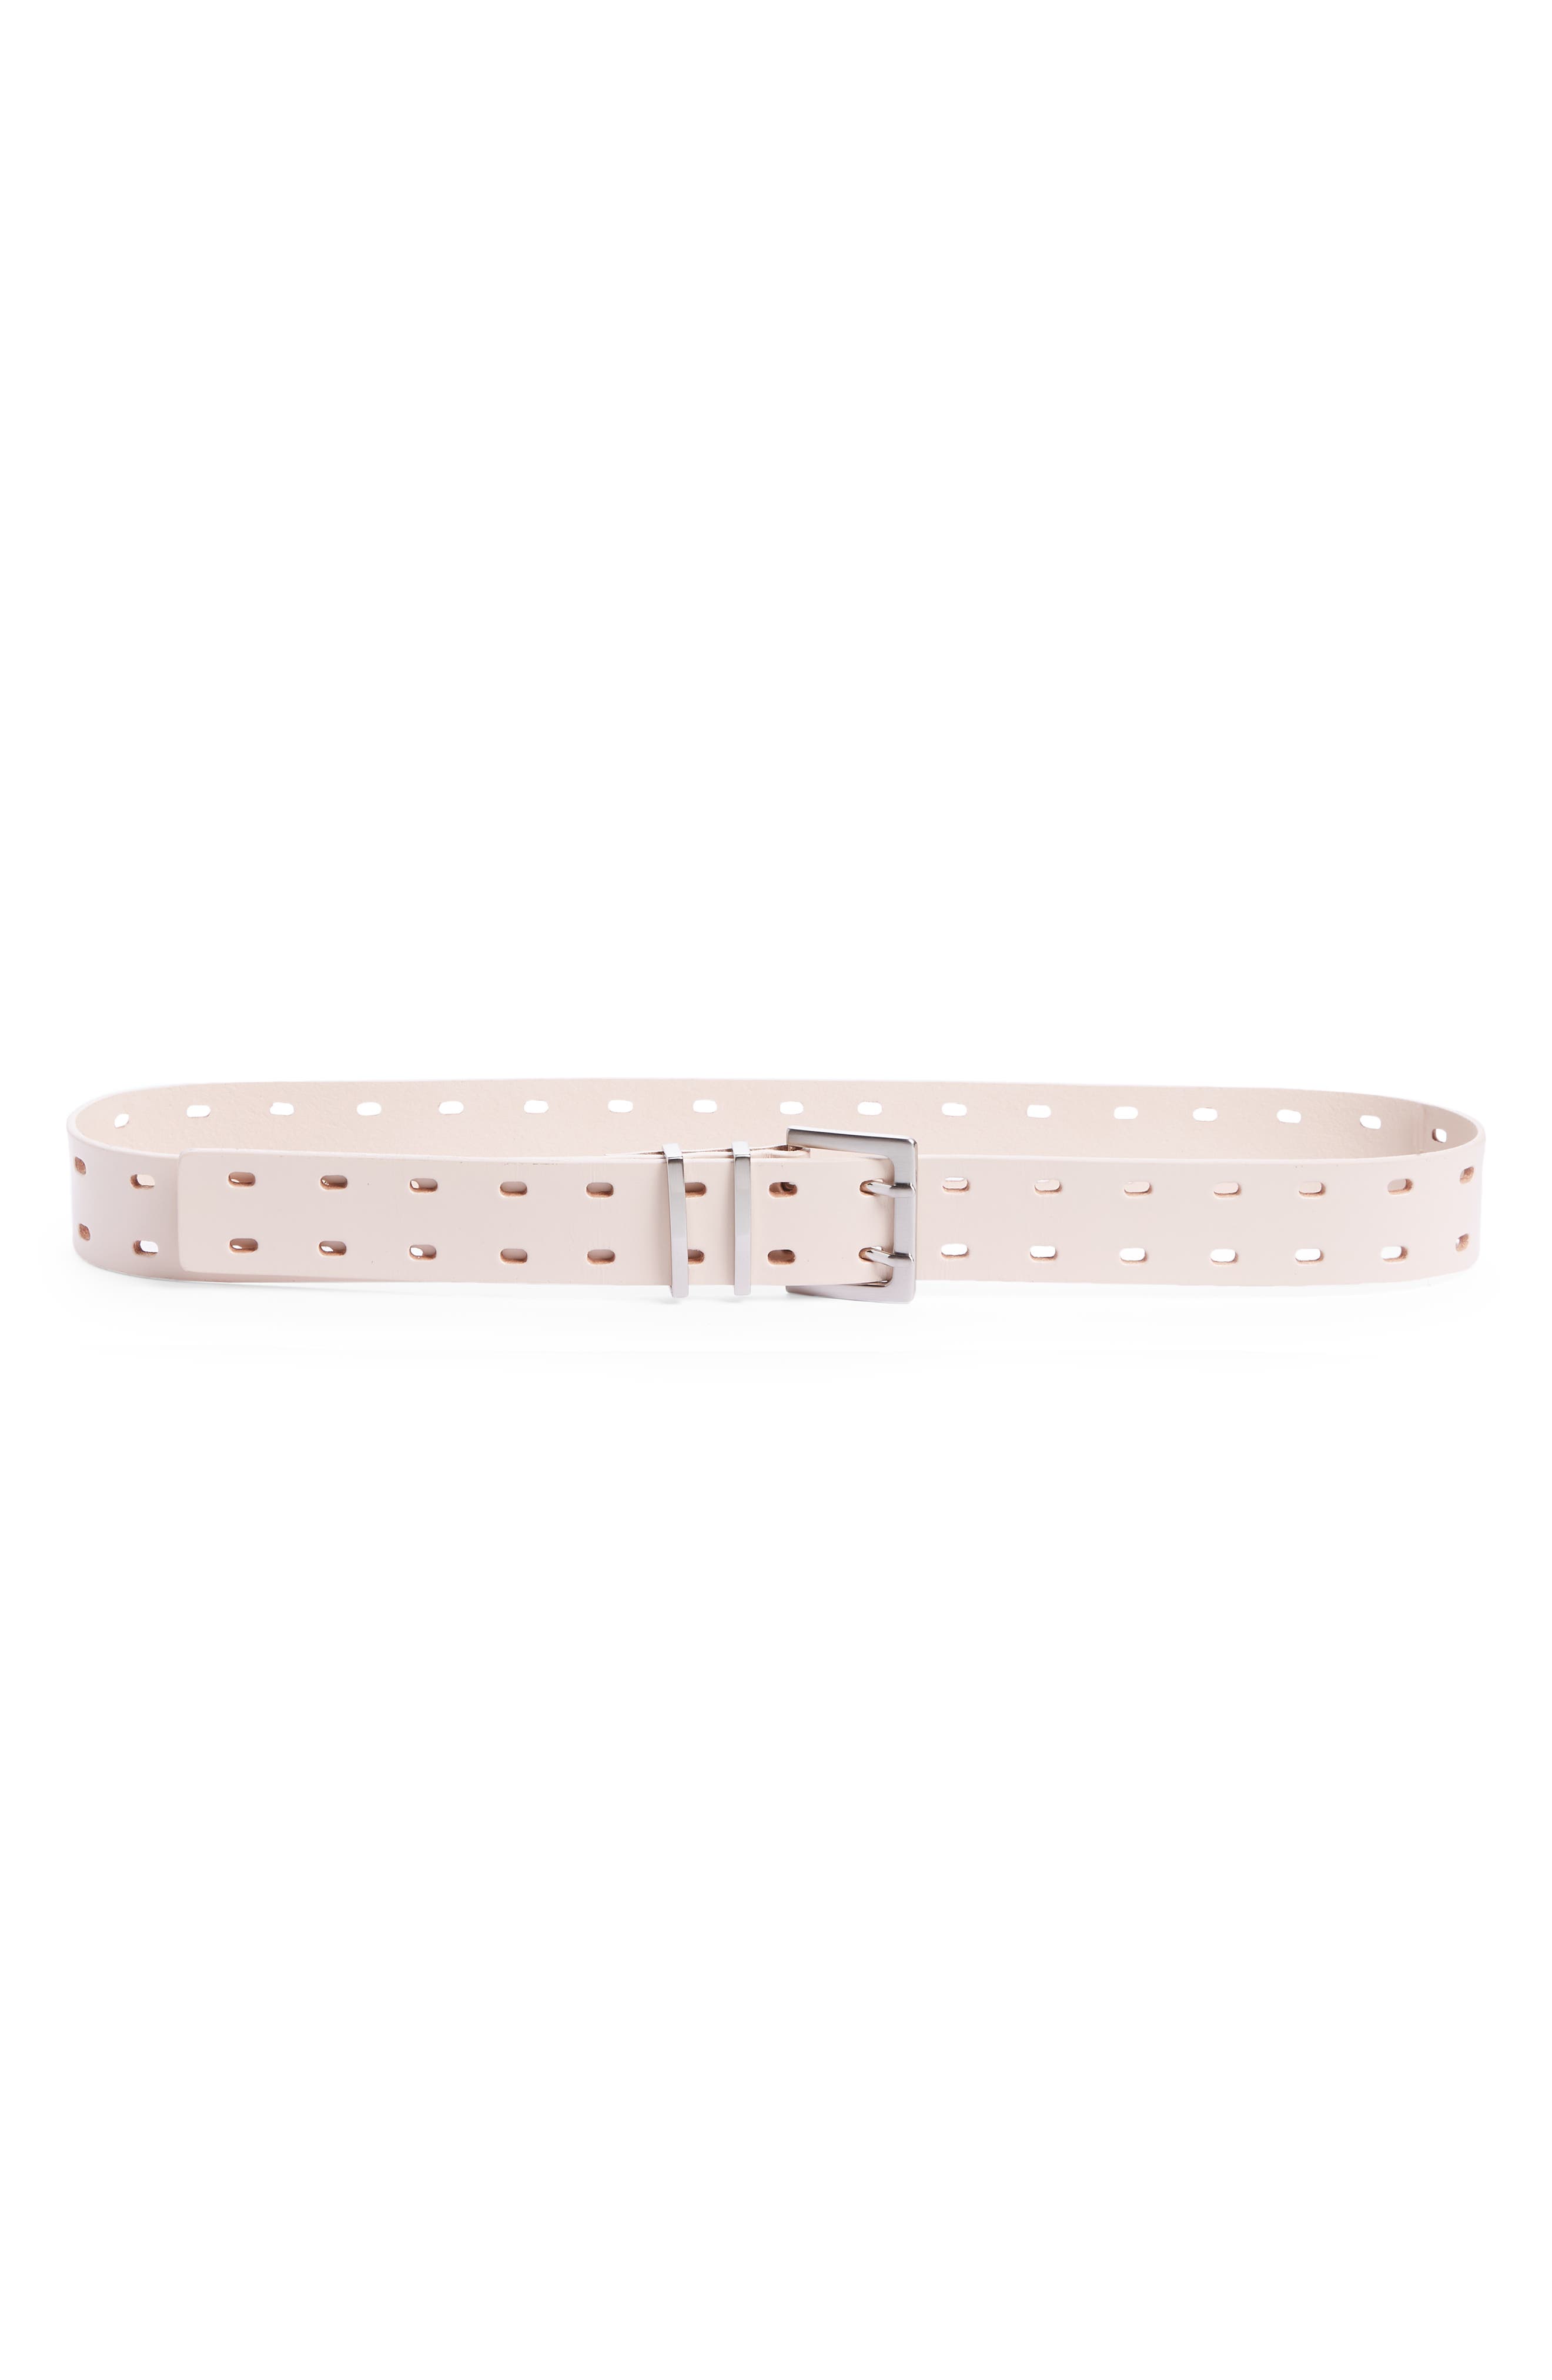 WOMEN FASHION Accessories Belt Pink discount 85% Pink S Sfera Thin pink belt 